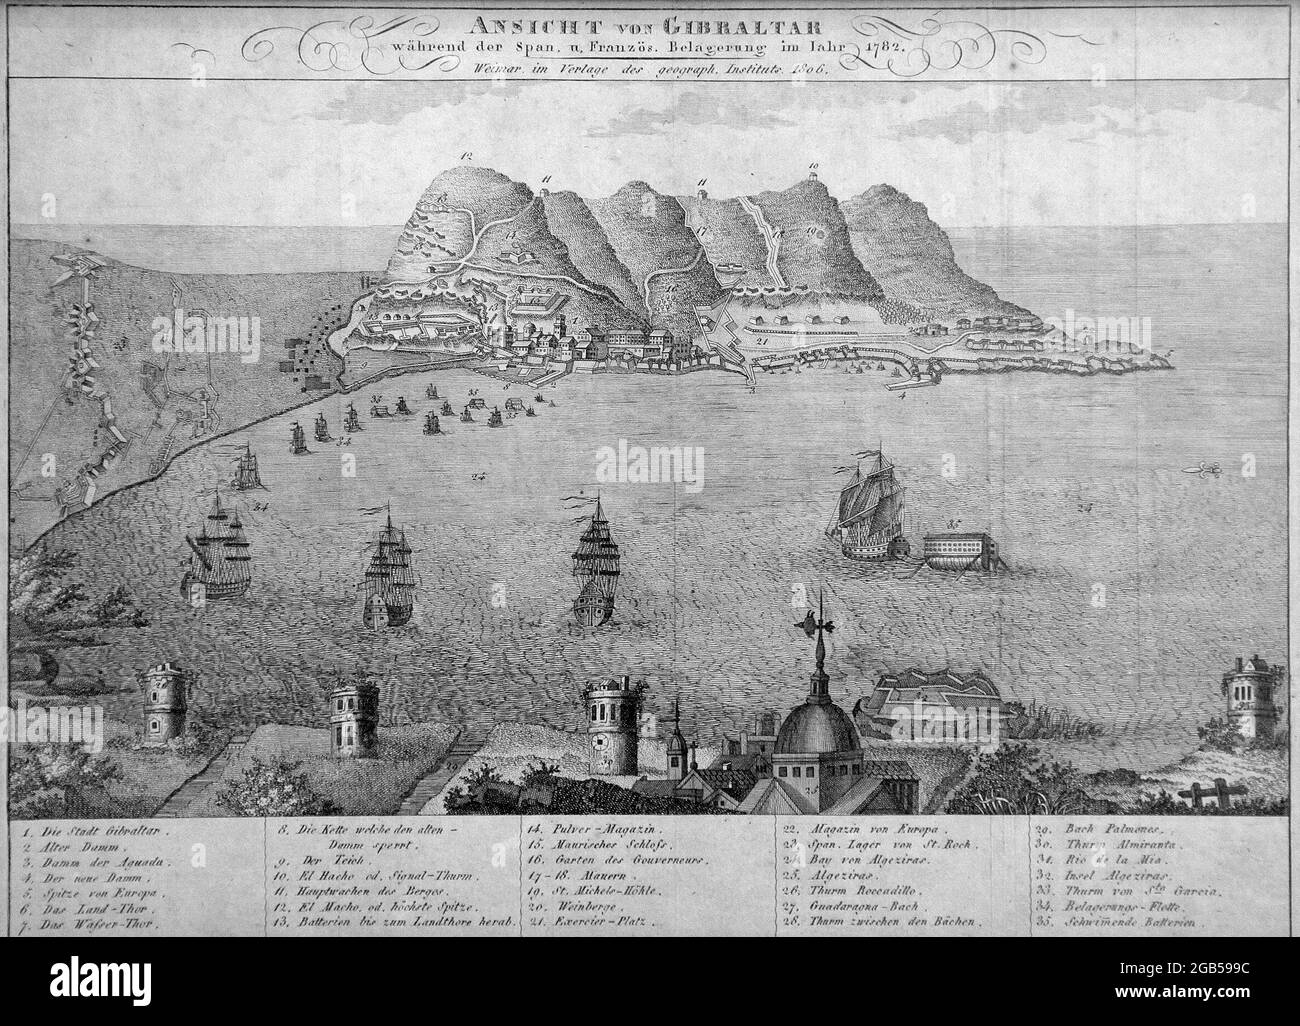 Ansicht von Gibraltar.Wahrend der spanische und franzosische Belagerung im jahr 1782.Weimar im verlage der geograph.institut 1806 Stock Photo